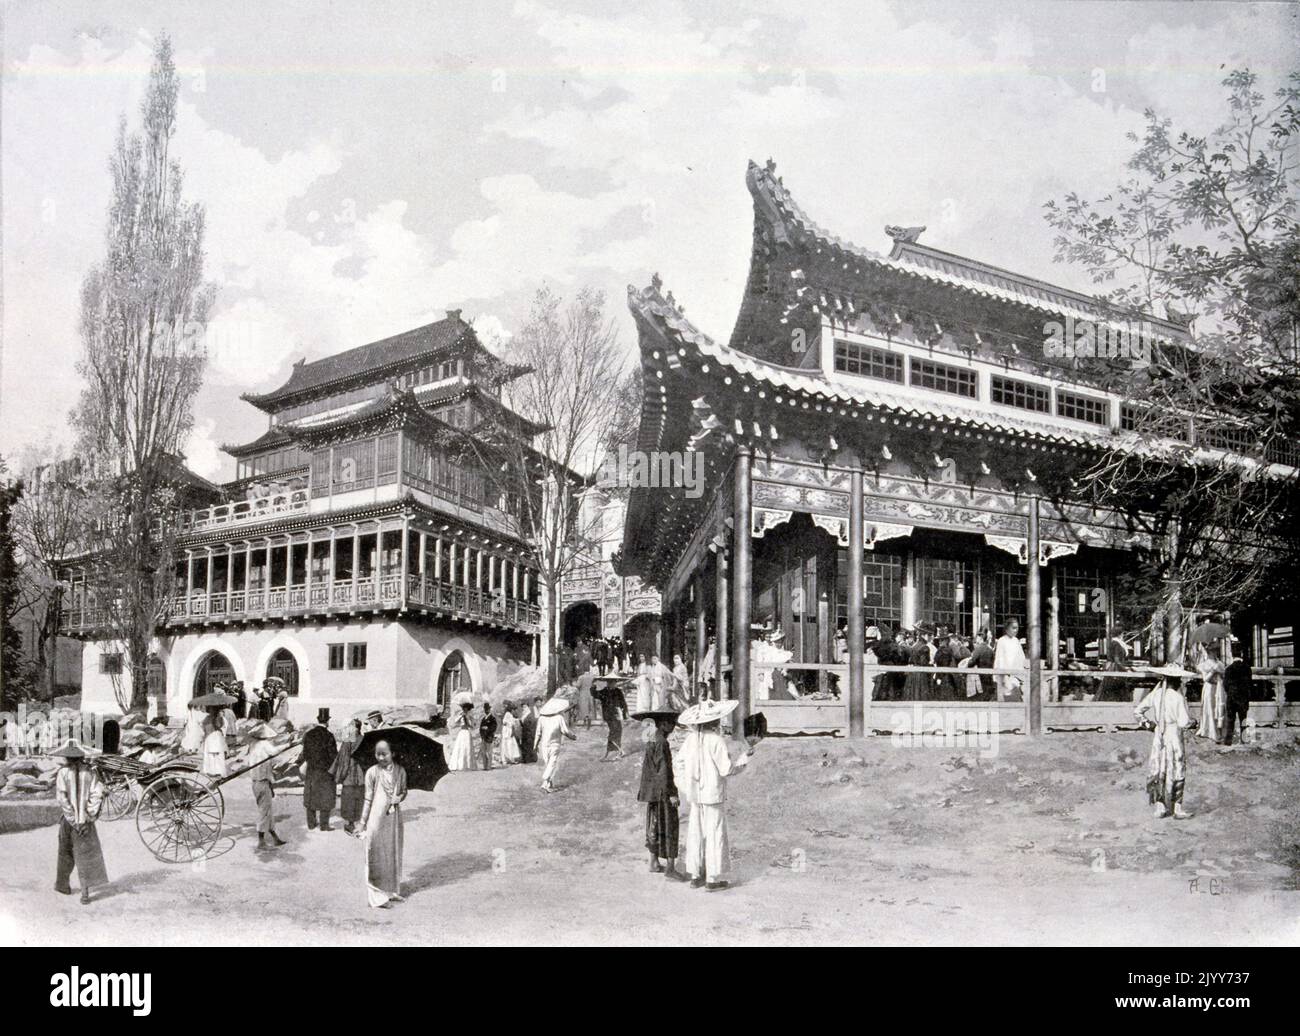 Exposition universelle (Foire mondiale) Paris, 1900; Photographie noir et blanc du quartier chinois. Banque D'Images